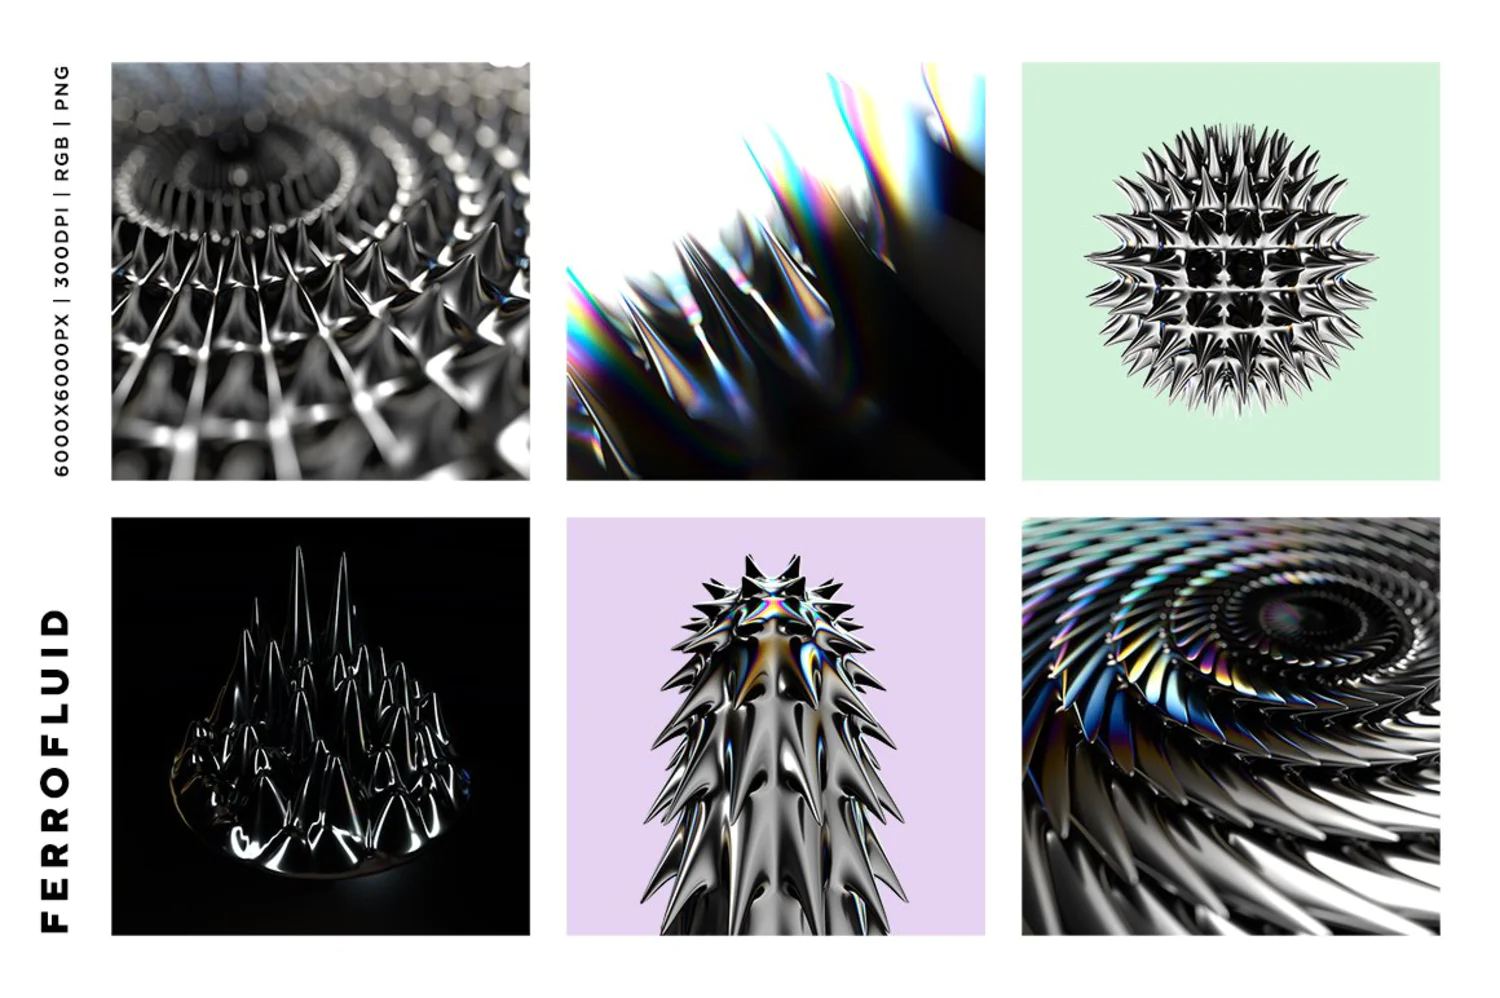 4538 磁性液体金属反射光泽未来科幻立体三维3D有机尖齿异形酸性海报背景肌理PNG元素套件 Ferrofluid Inspired Images@GOOODME.COM